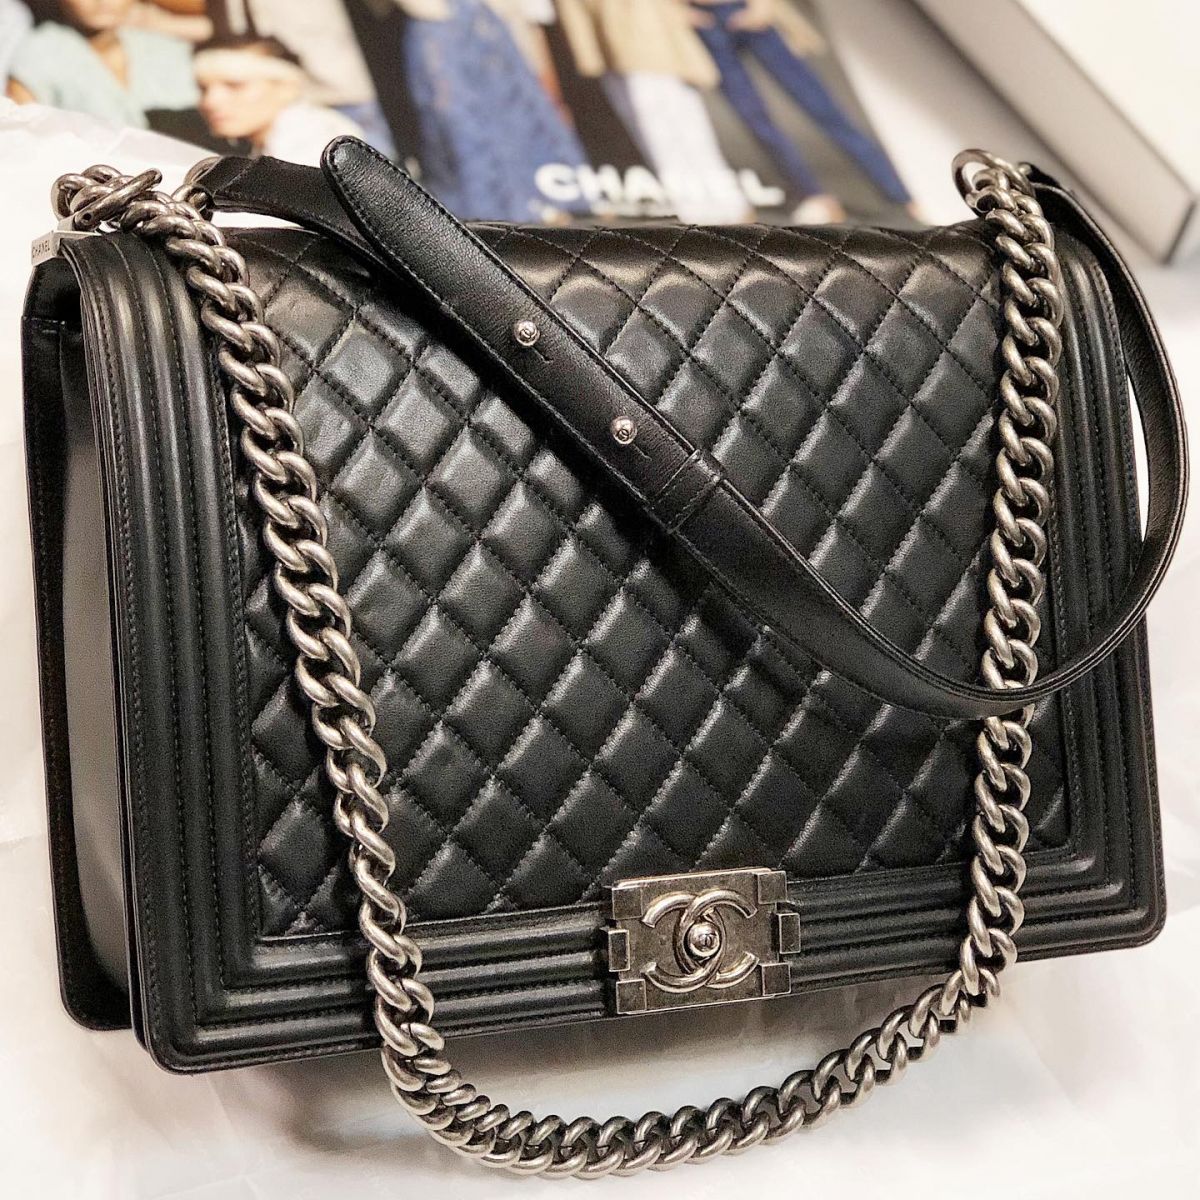 Женская сумка Chanel B107936 реплика купить в Москве по цене 7900 руб   Доставка по всей России